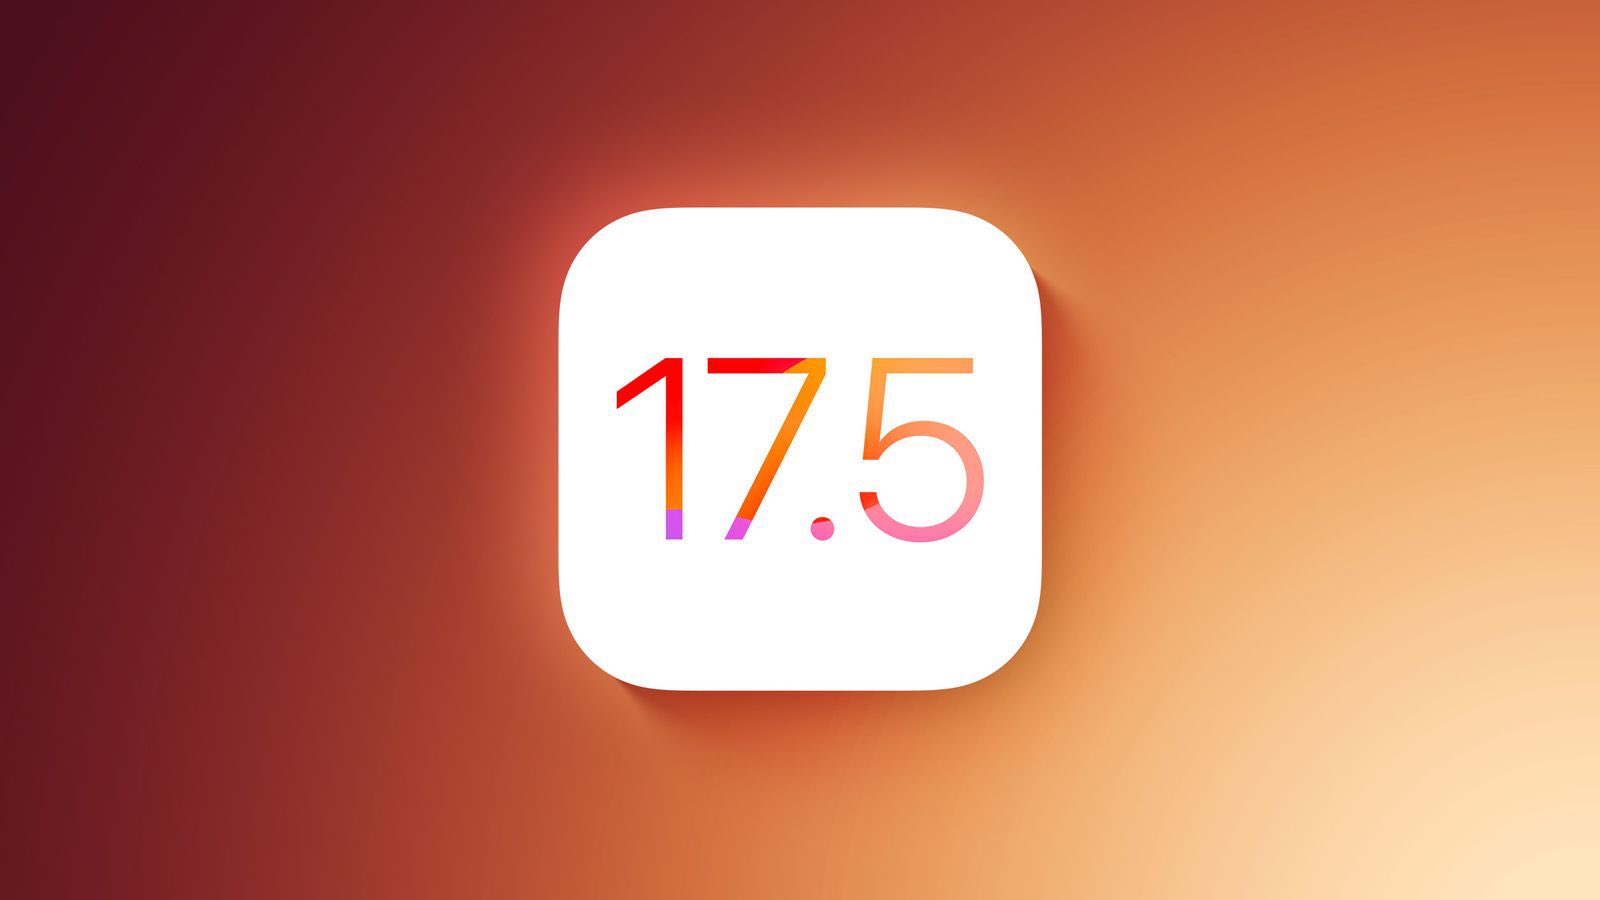 Bug iOS 17.5 : une nouvelle mise à jour ramène les photos « NSFW » supprimées, les utilisateurs « se sentent mal à l’aise »